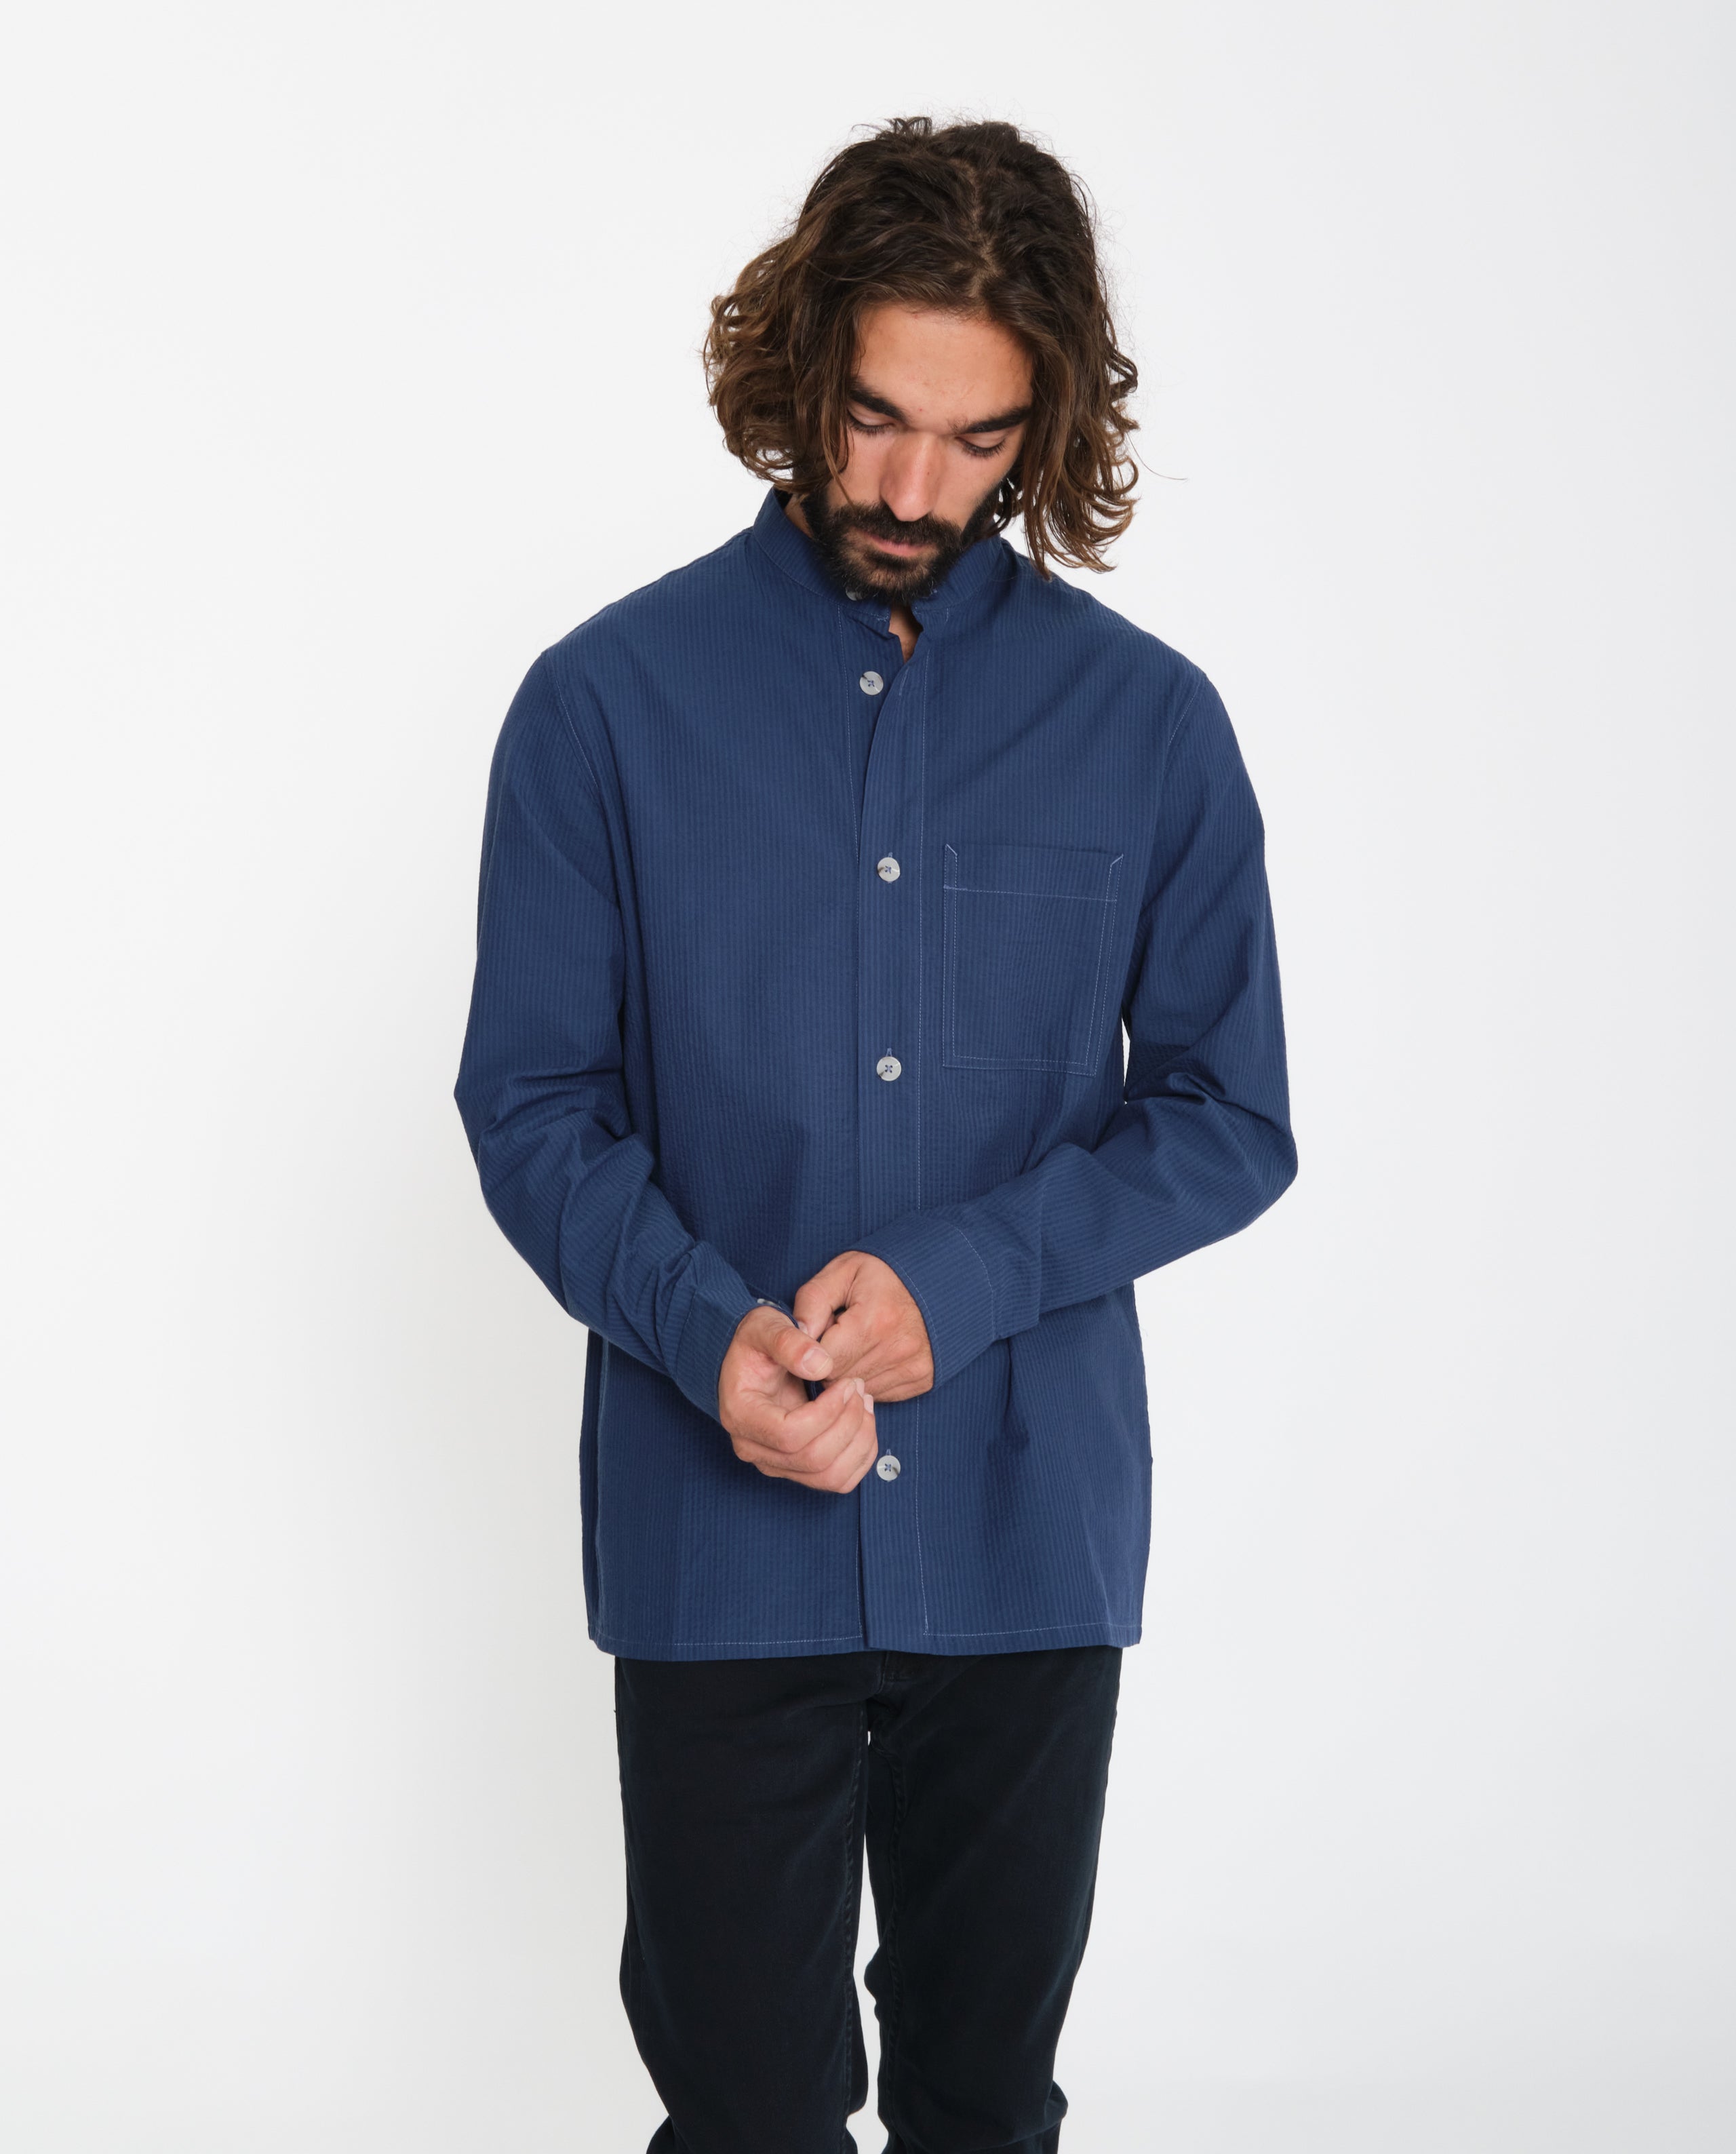 marché commun rotholz sur-chemise homme col officier fines rayures coton biologique fabriquée en europe bleu